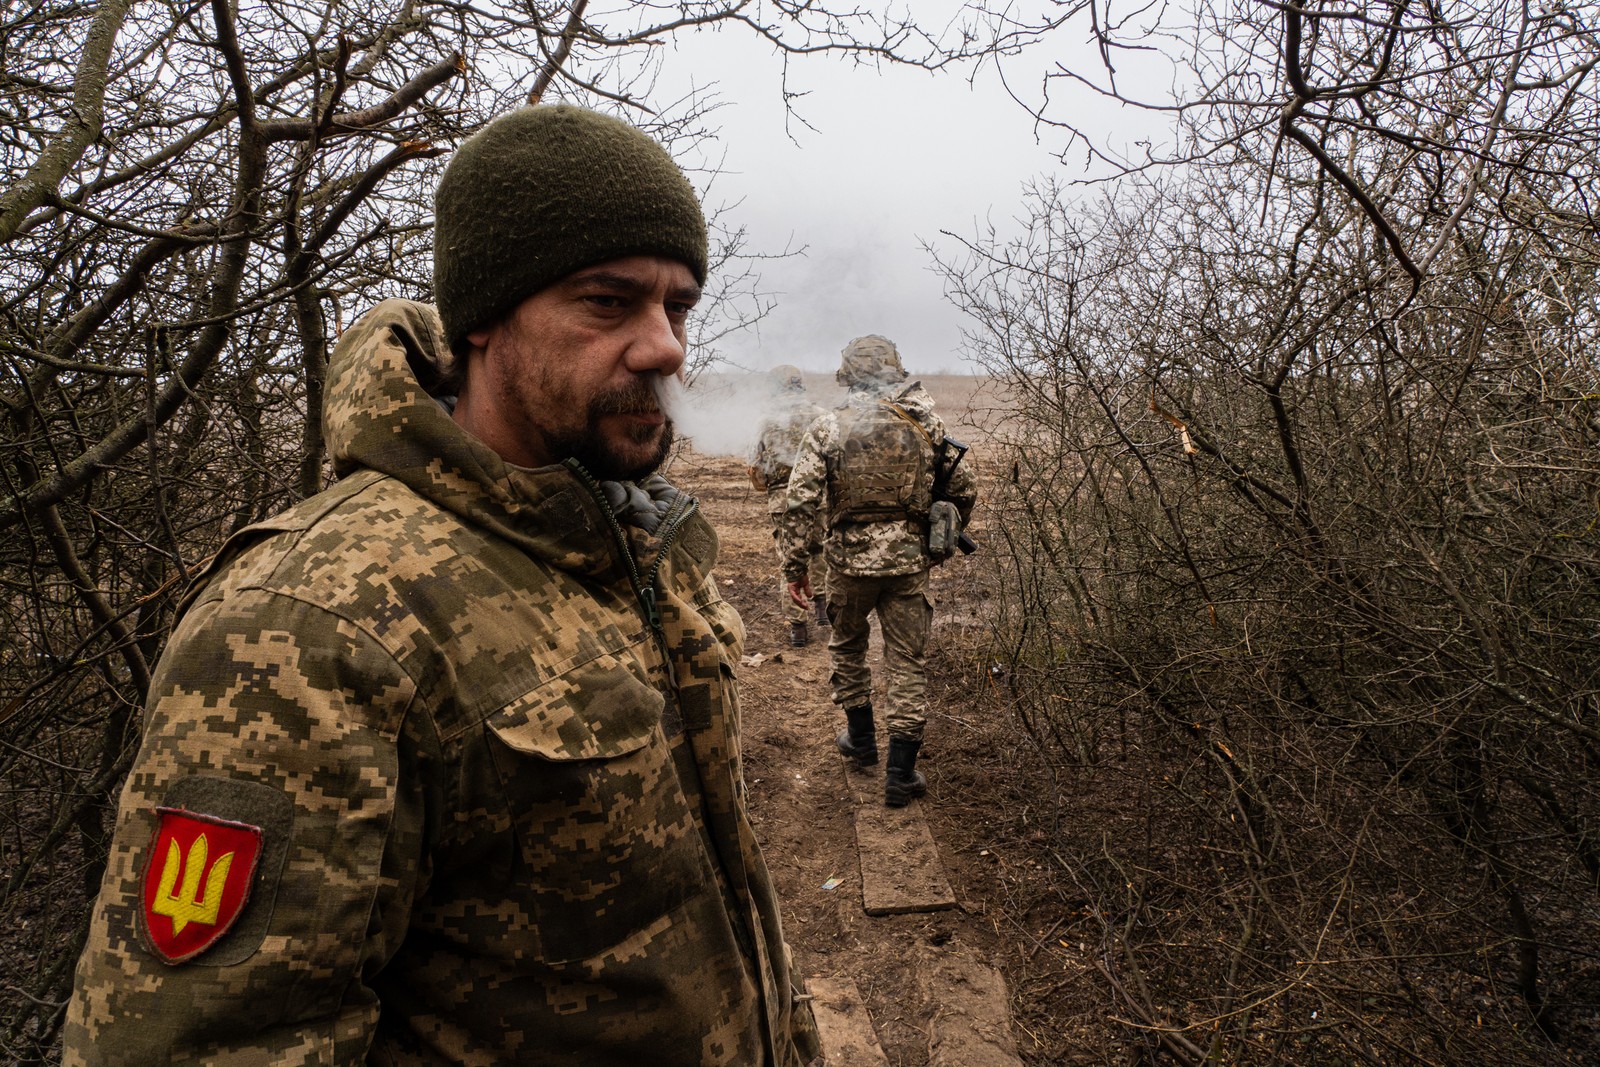 Soldados ucranianos saem em patrulha em região de combates no entorno da cidade Kupiansk, área que já foi controlada pelos russos no início da invasão e alvo de constantes ataques das tropas de Moscou. — Foto: Yan Boechat